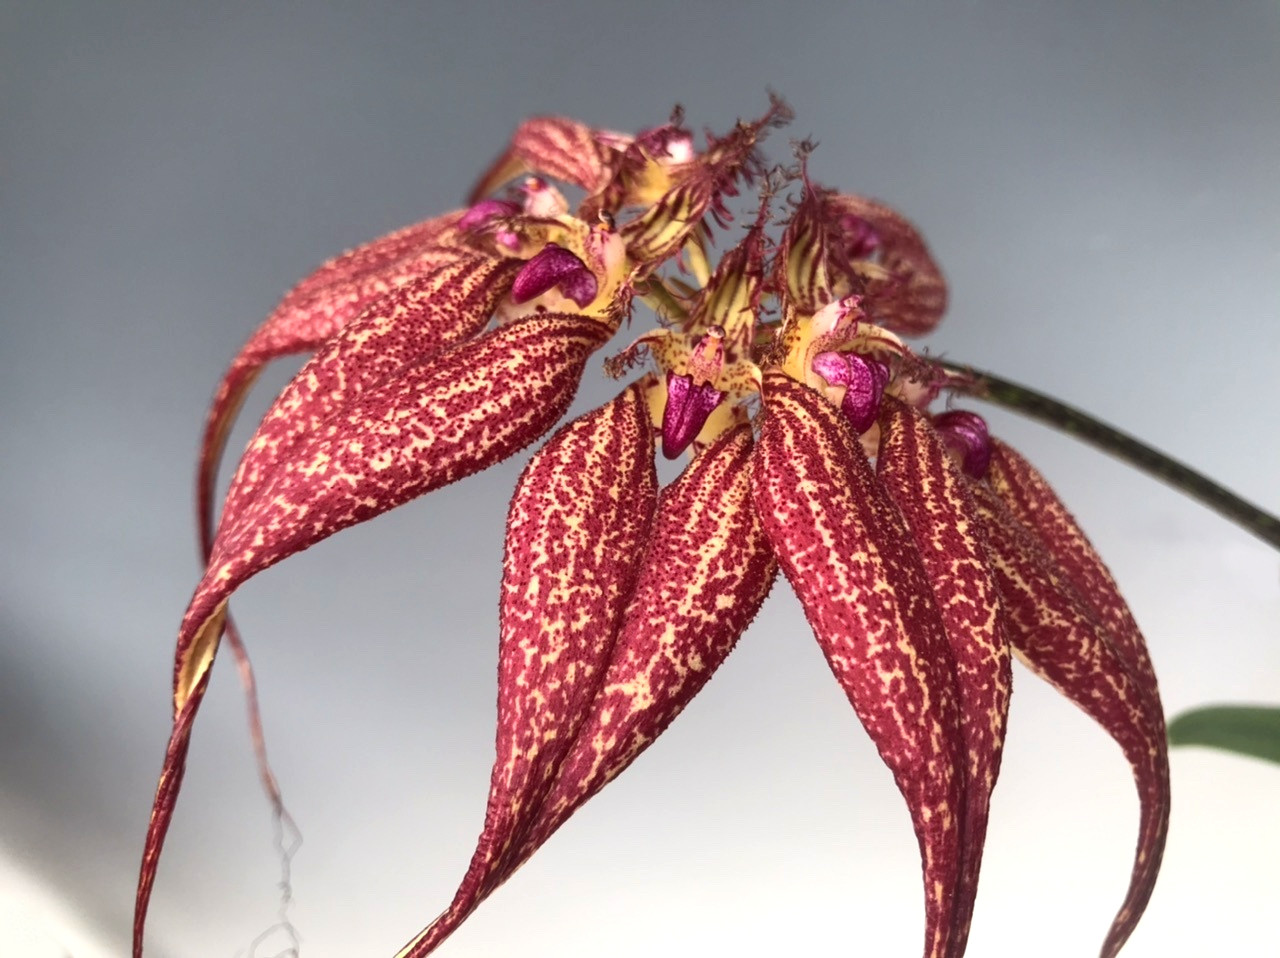 Bulbophyllum rothschildianum 'Red Chimney' FCC/AOS